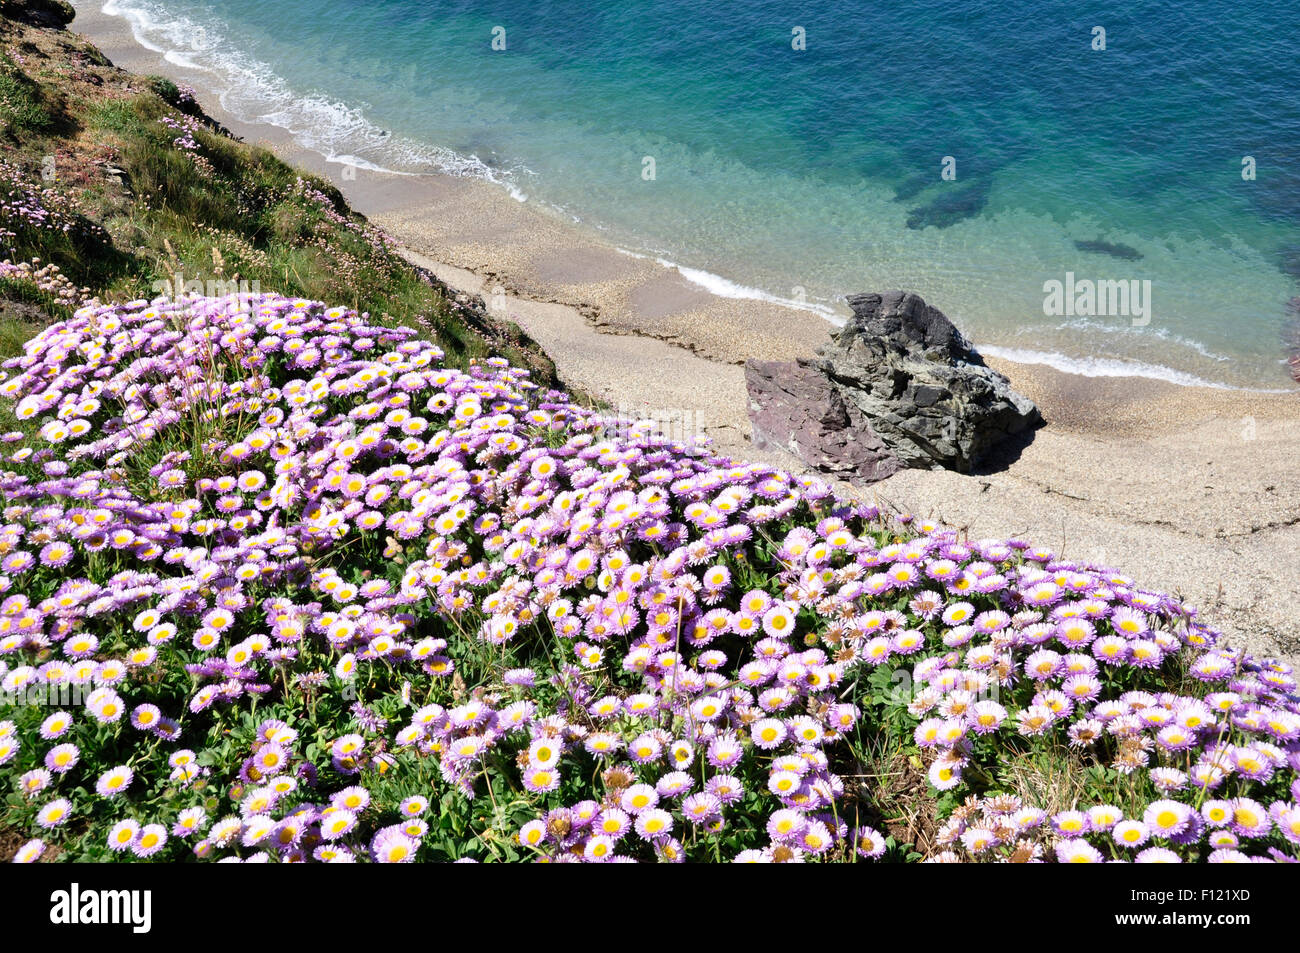 Cornouailles du nord - côte nr Polzeath - fleurs sauvages cascadant la falaise - côte rocheuse - calme ses - Soleil Banque D'Images